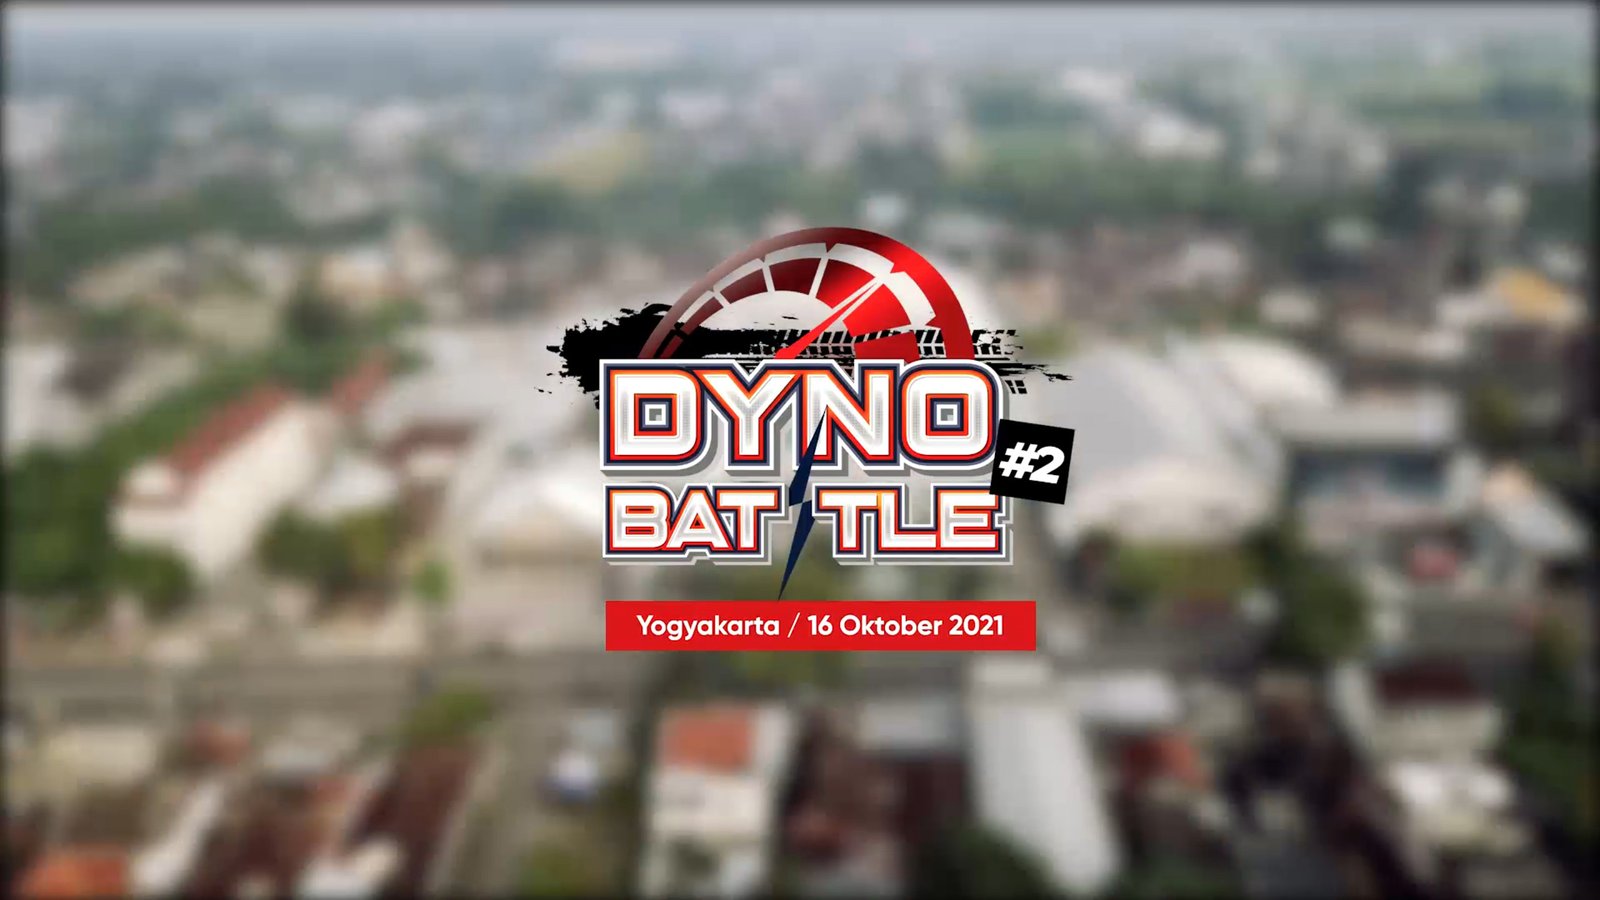 Dyno Battle #2